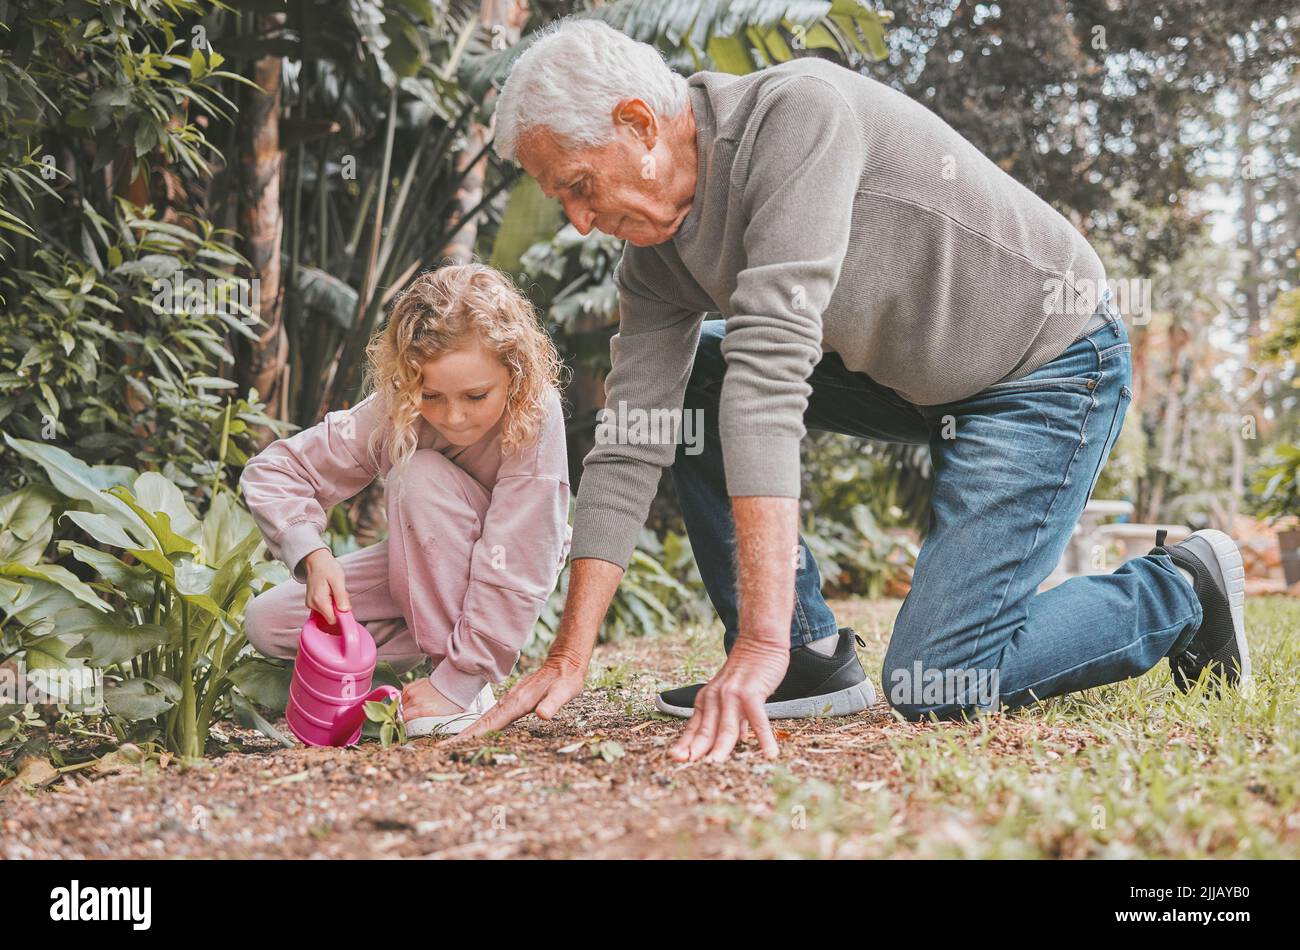 Lernen, Garten ist eine ganze Menge Spaß. Ein entzückendes kleines Mädchen im Garten mit ihrem Großvater. Stockfoto